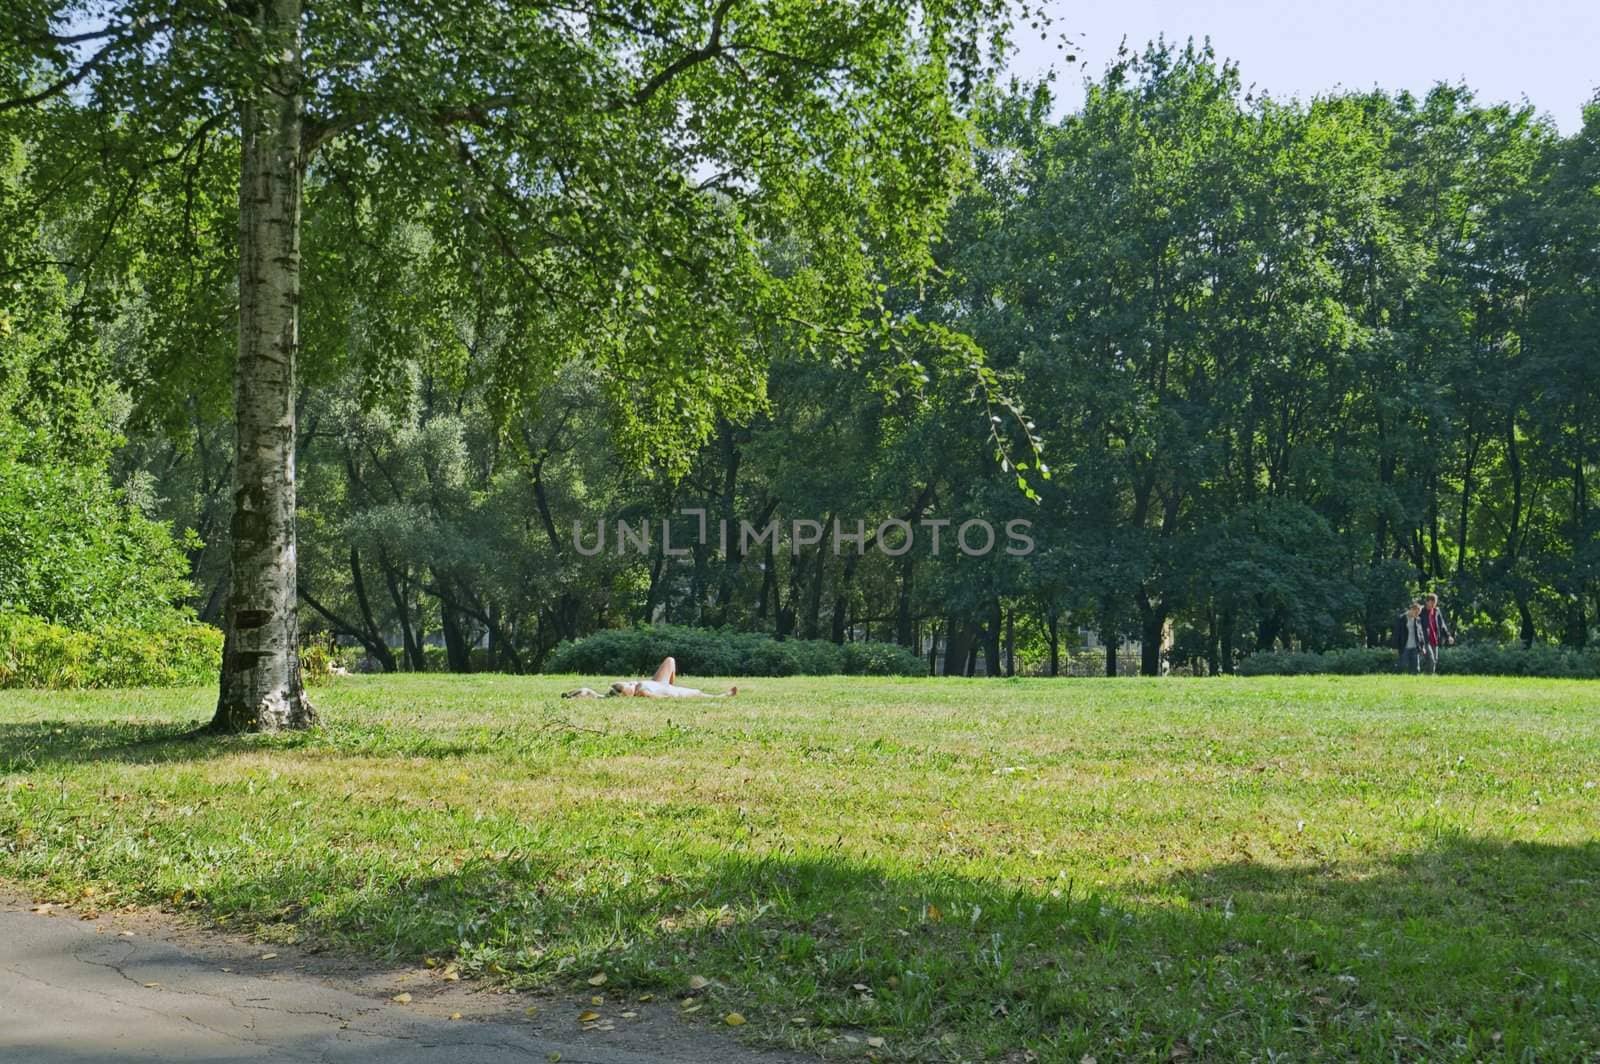 City park in summer by simfan